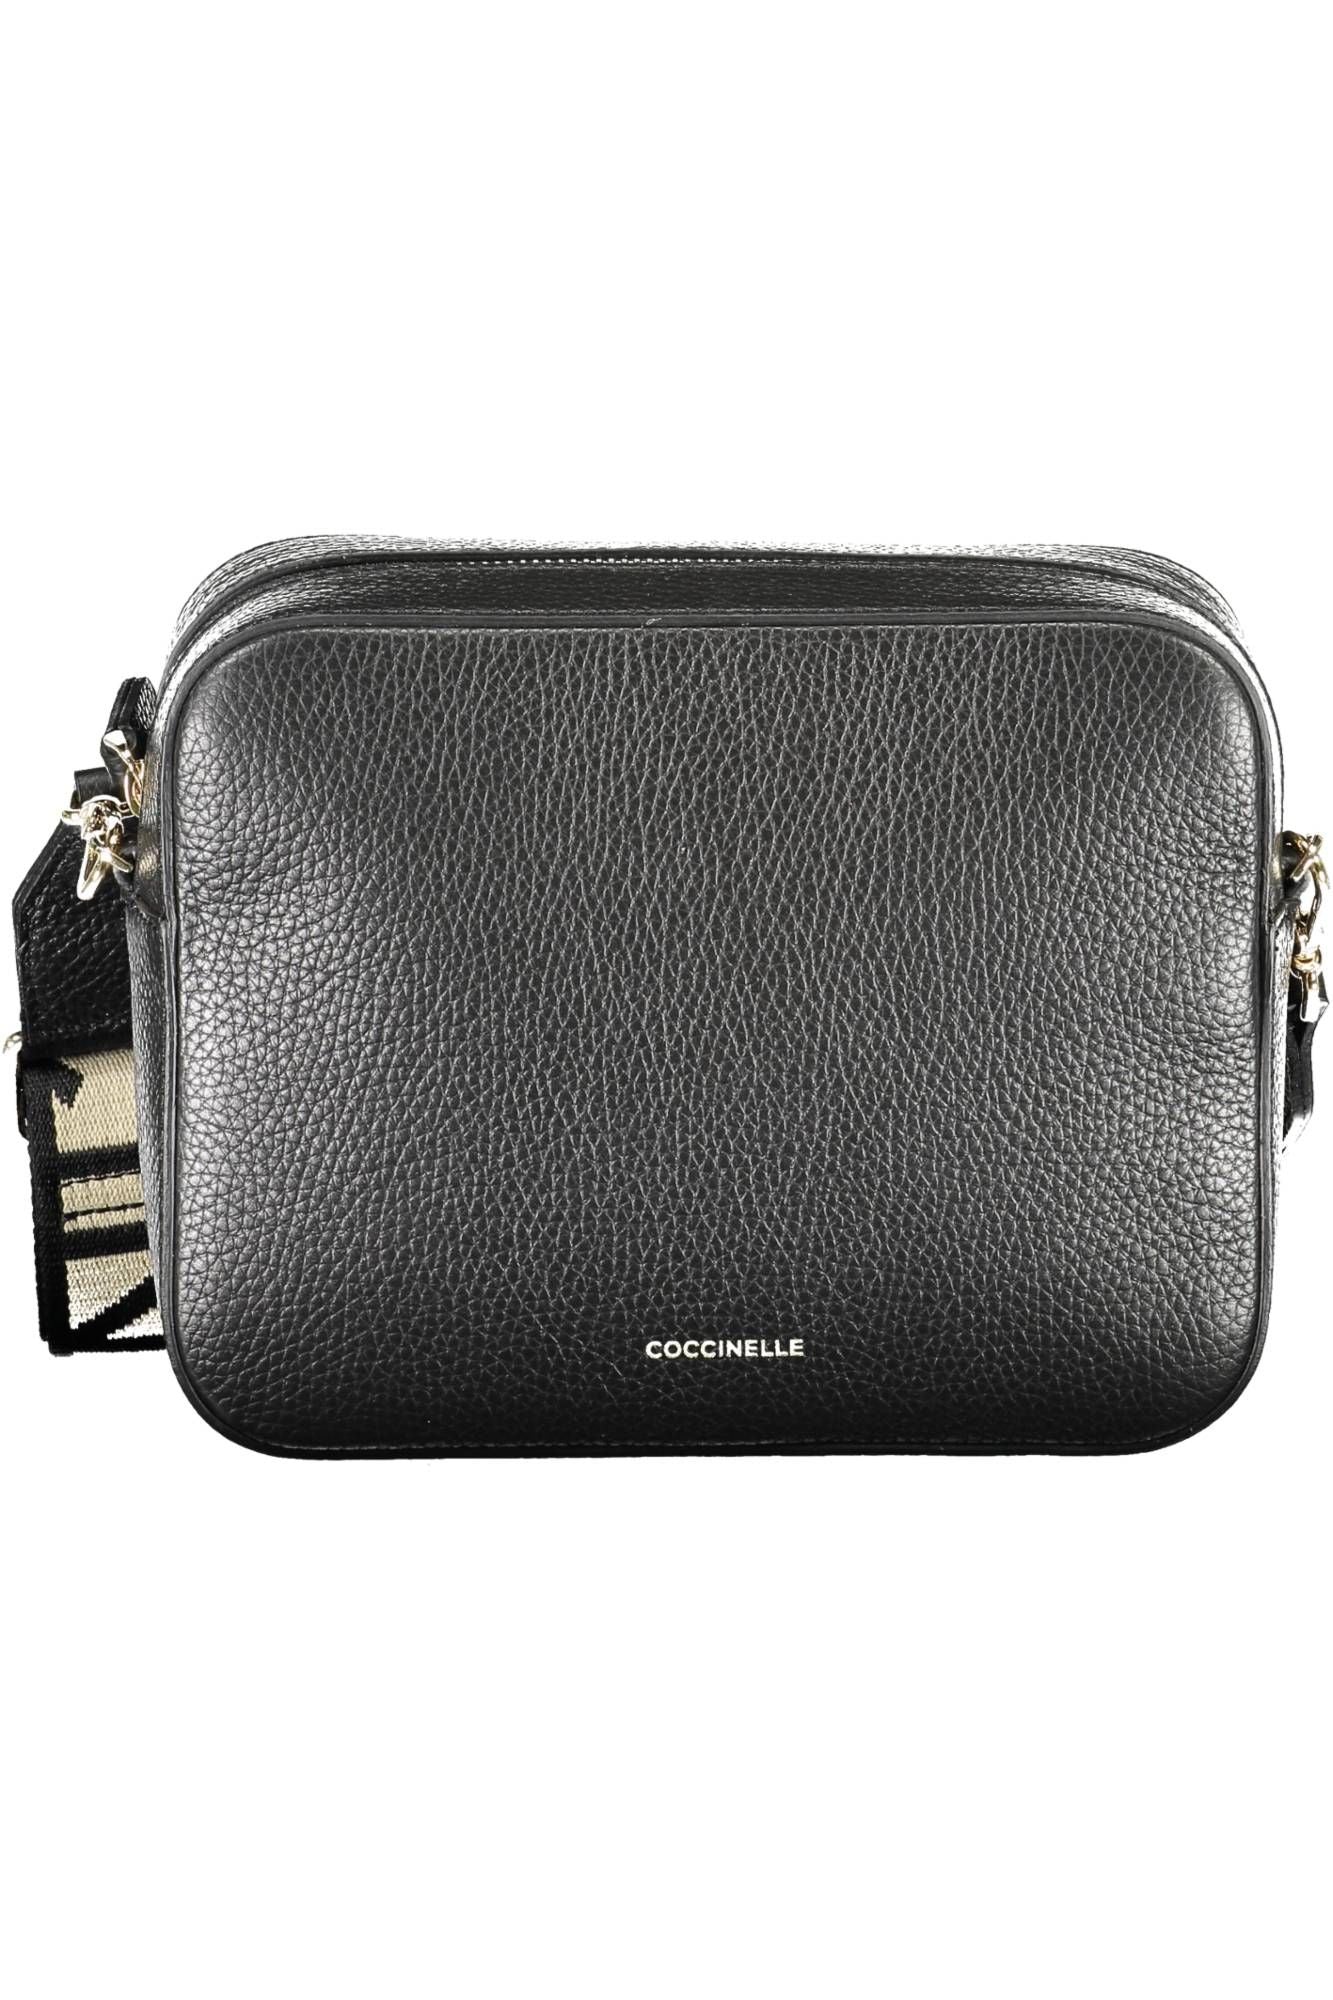 Elegant Black Leather Shoulder Bag with Contrasting Details